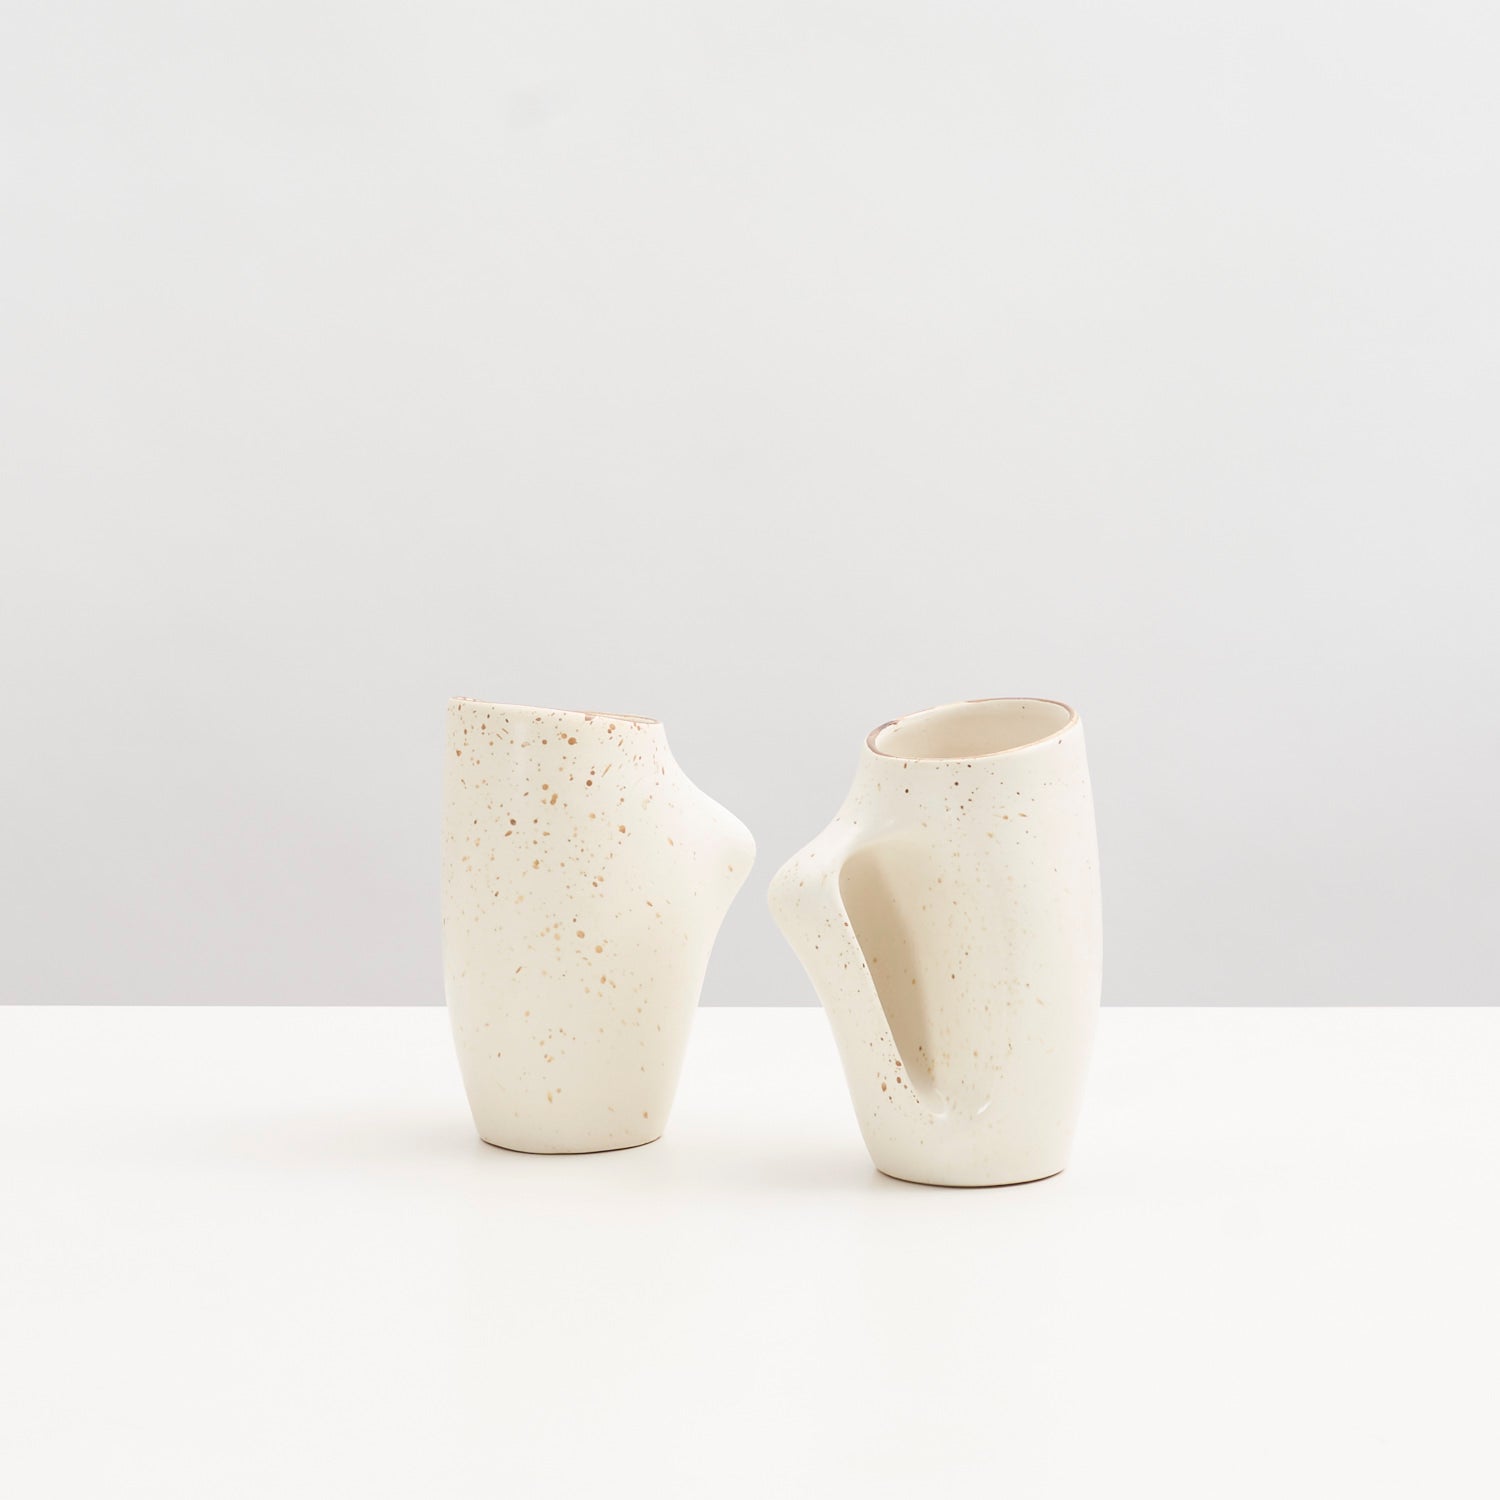 Pair of Mugs by Gaétan Beaudin for Laurentian Pottery